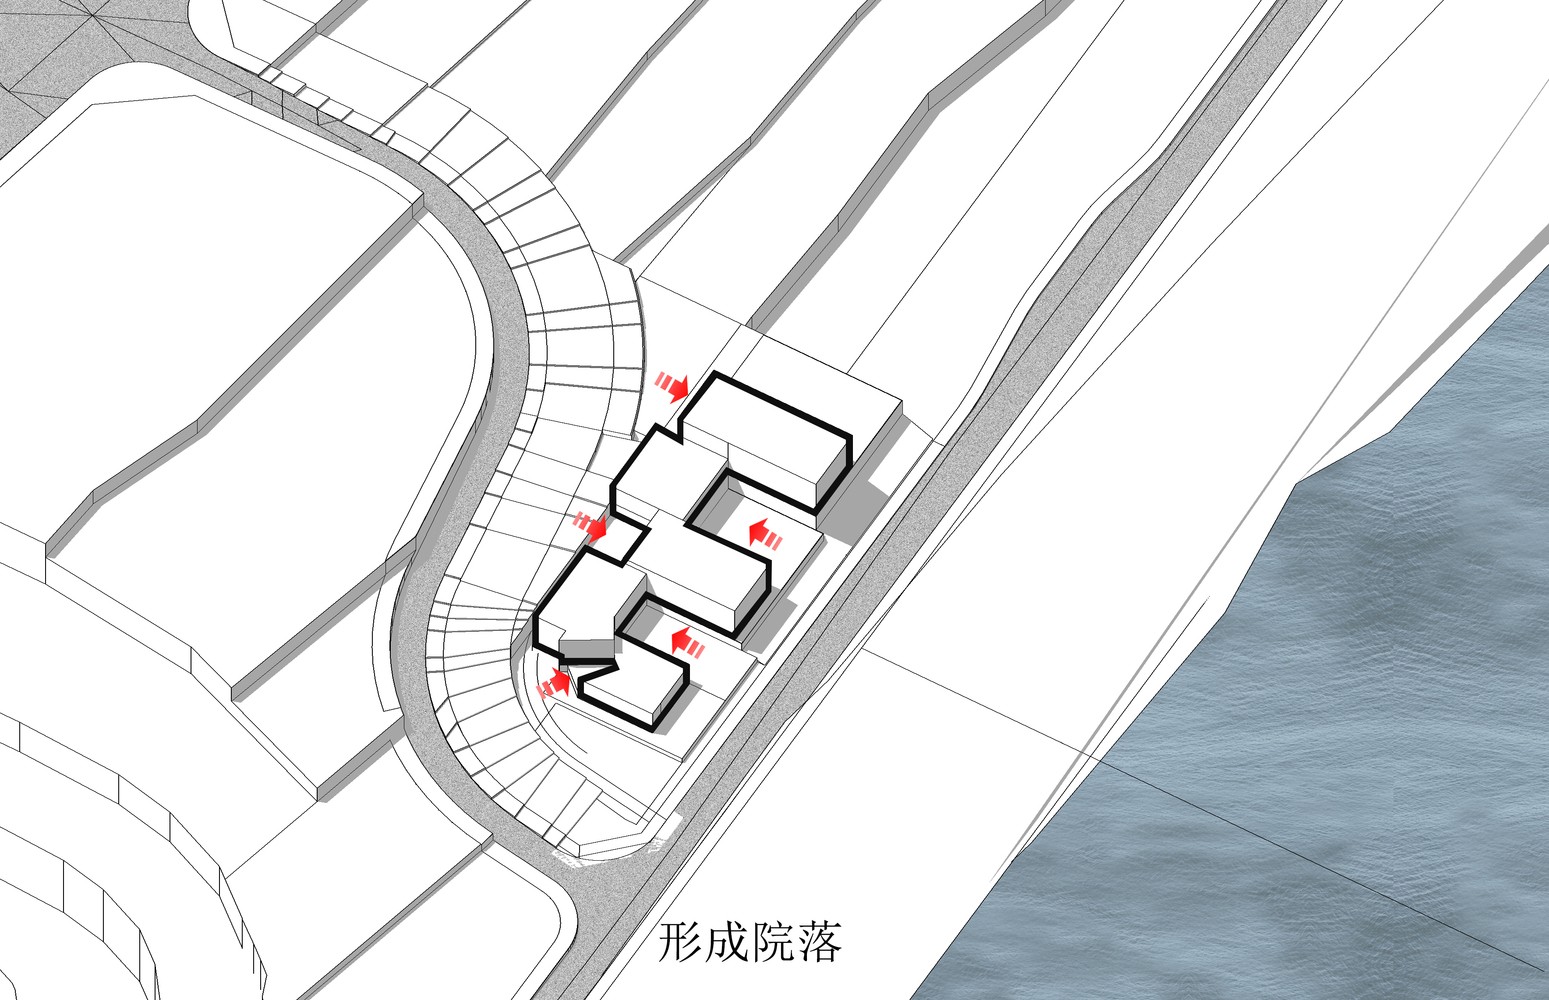 重庆龙湖两江长滩原麓社区中心建筑设计/成执建筑